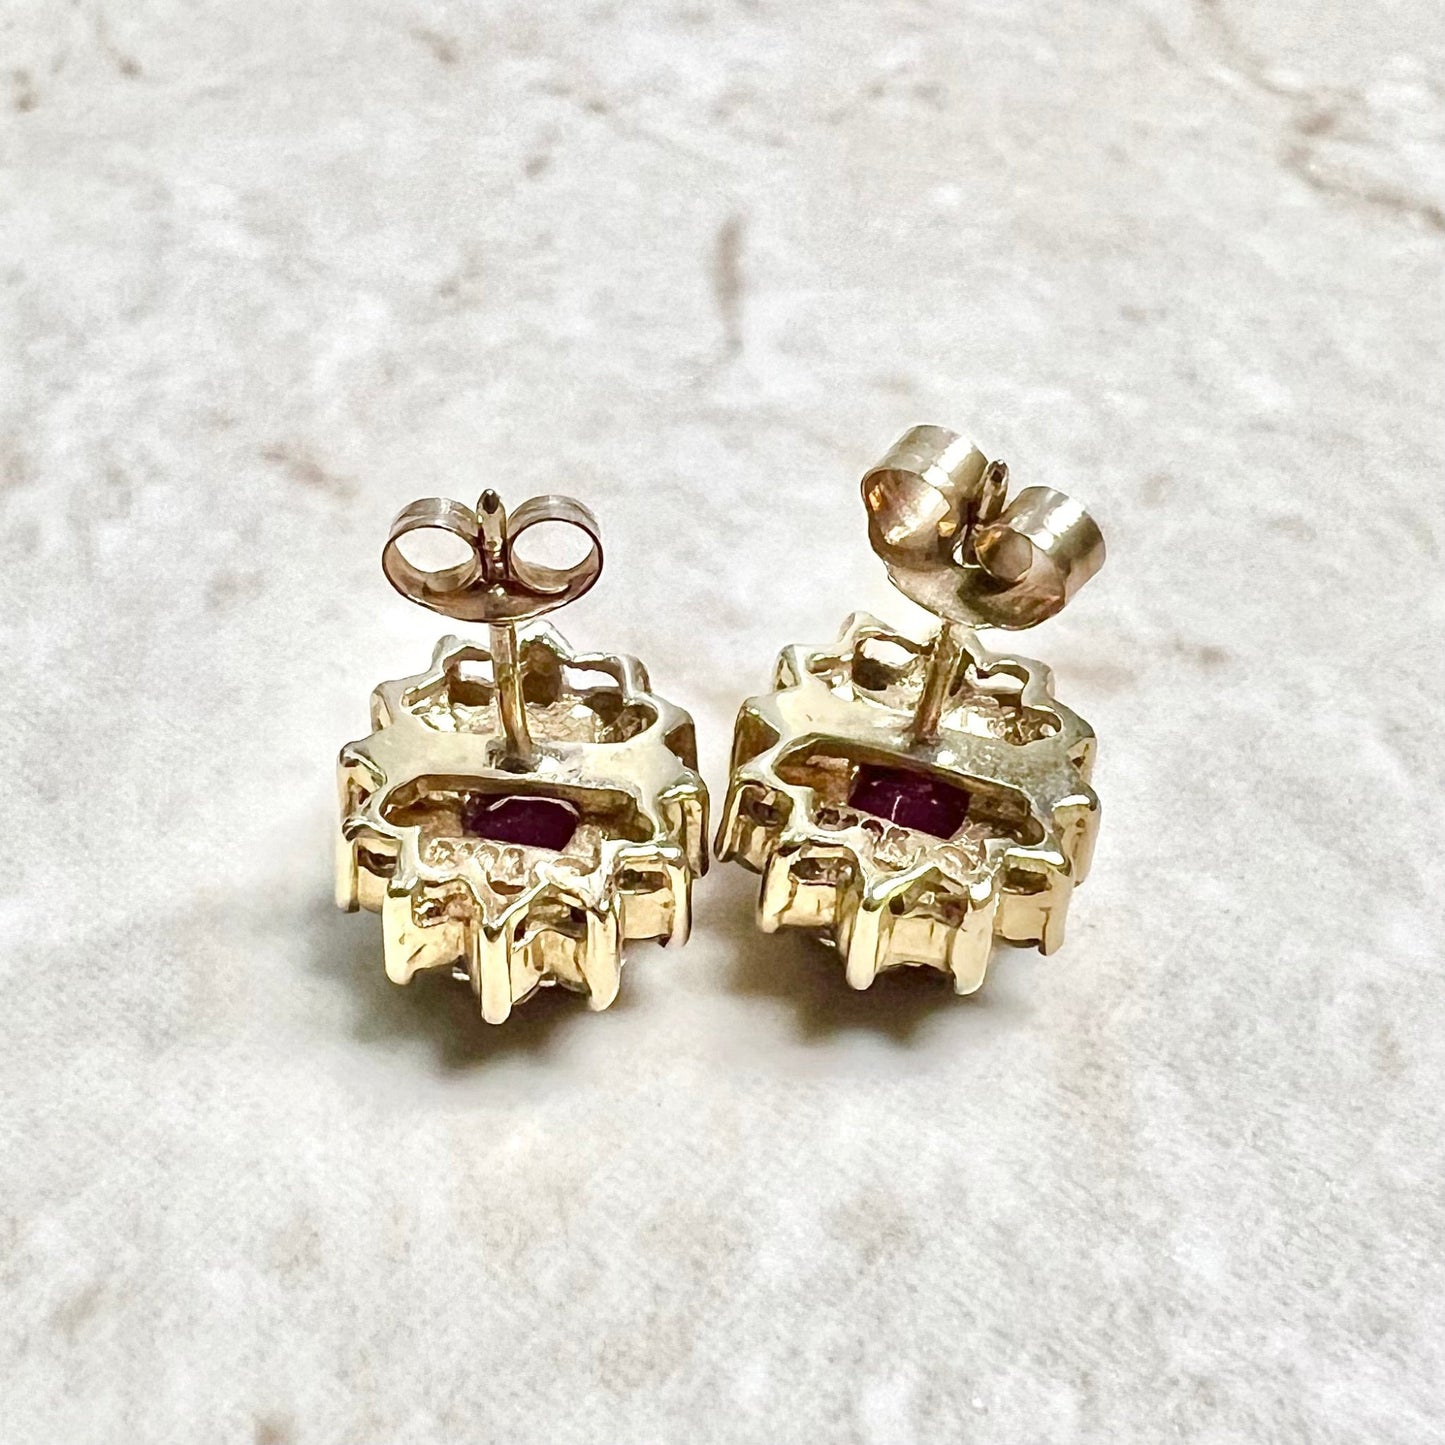 10 Karat Two-Tonw Gold Diamond & Oval Ruby Halo Stud Earrings - WeilJewelry